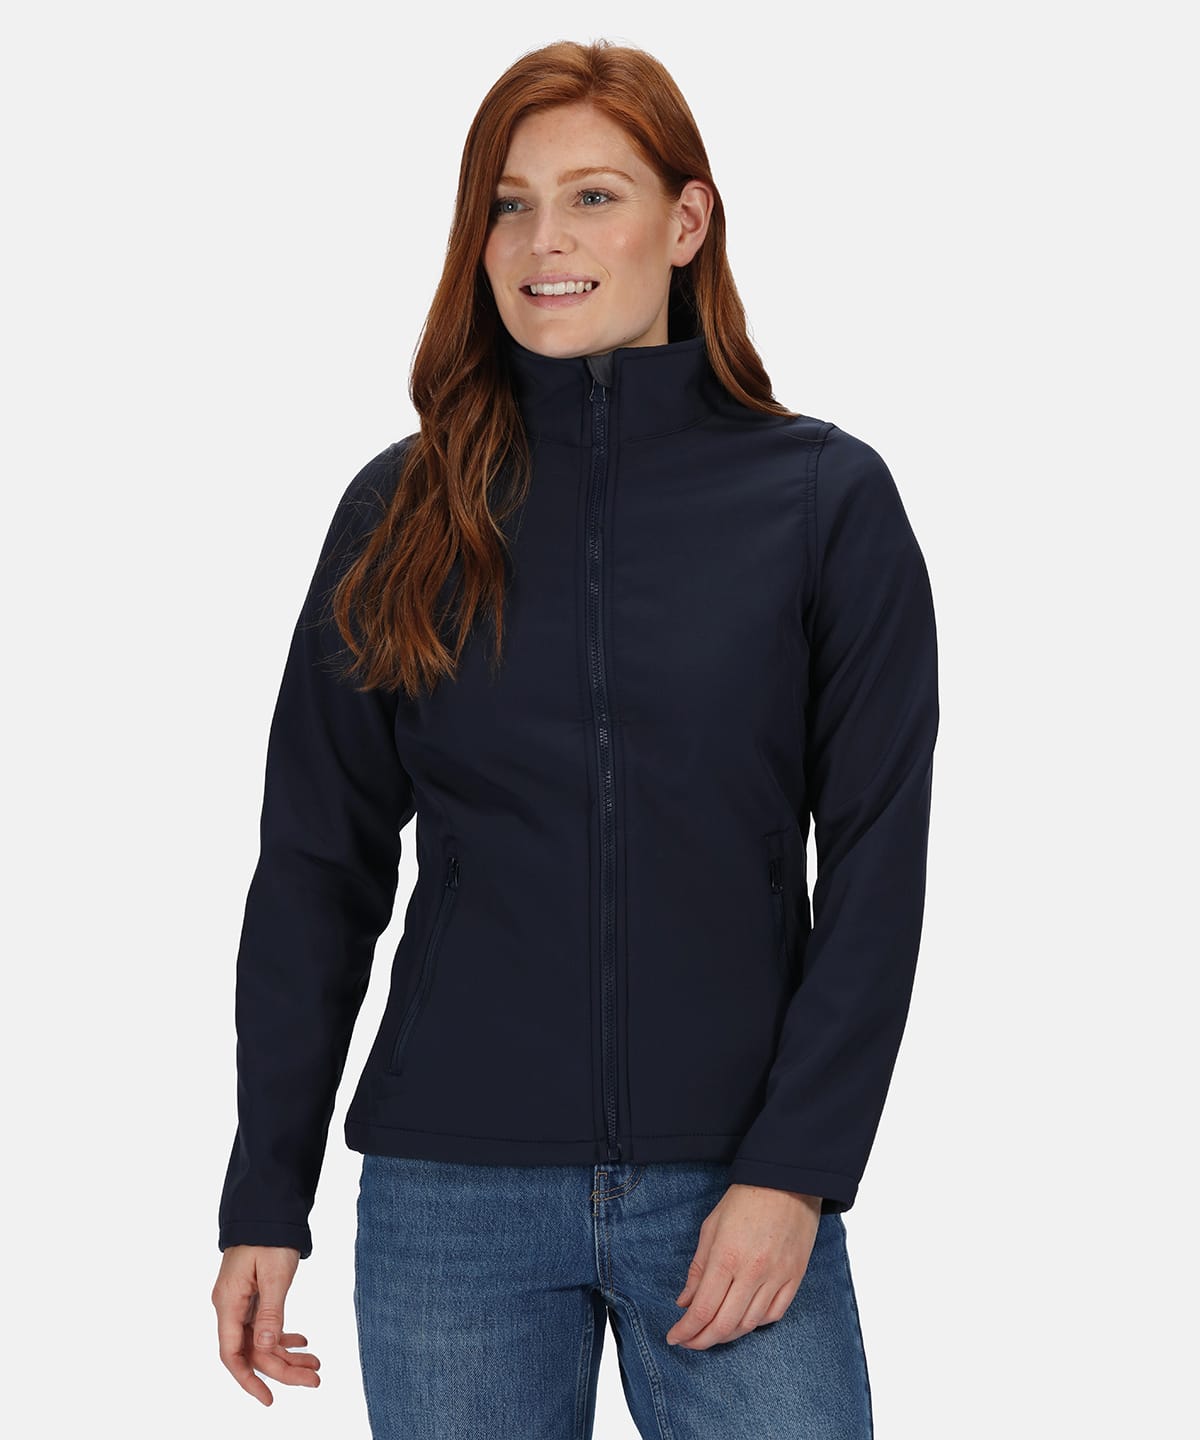 Outer Waterproof Inner Warm Soft Shell REGATTA KINGSLEY Ladies 3-in-1 Jacket 